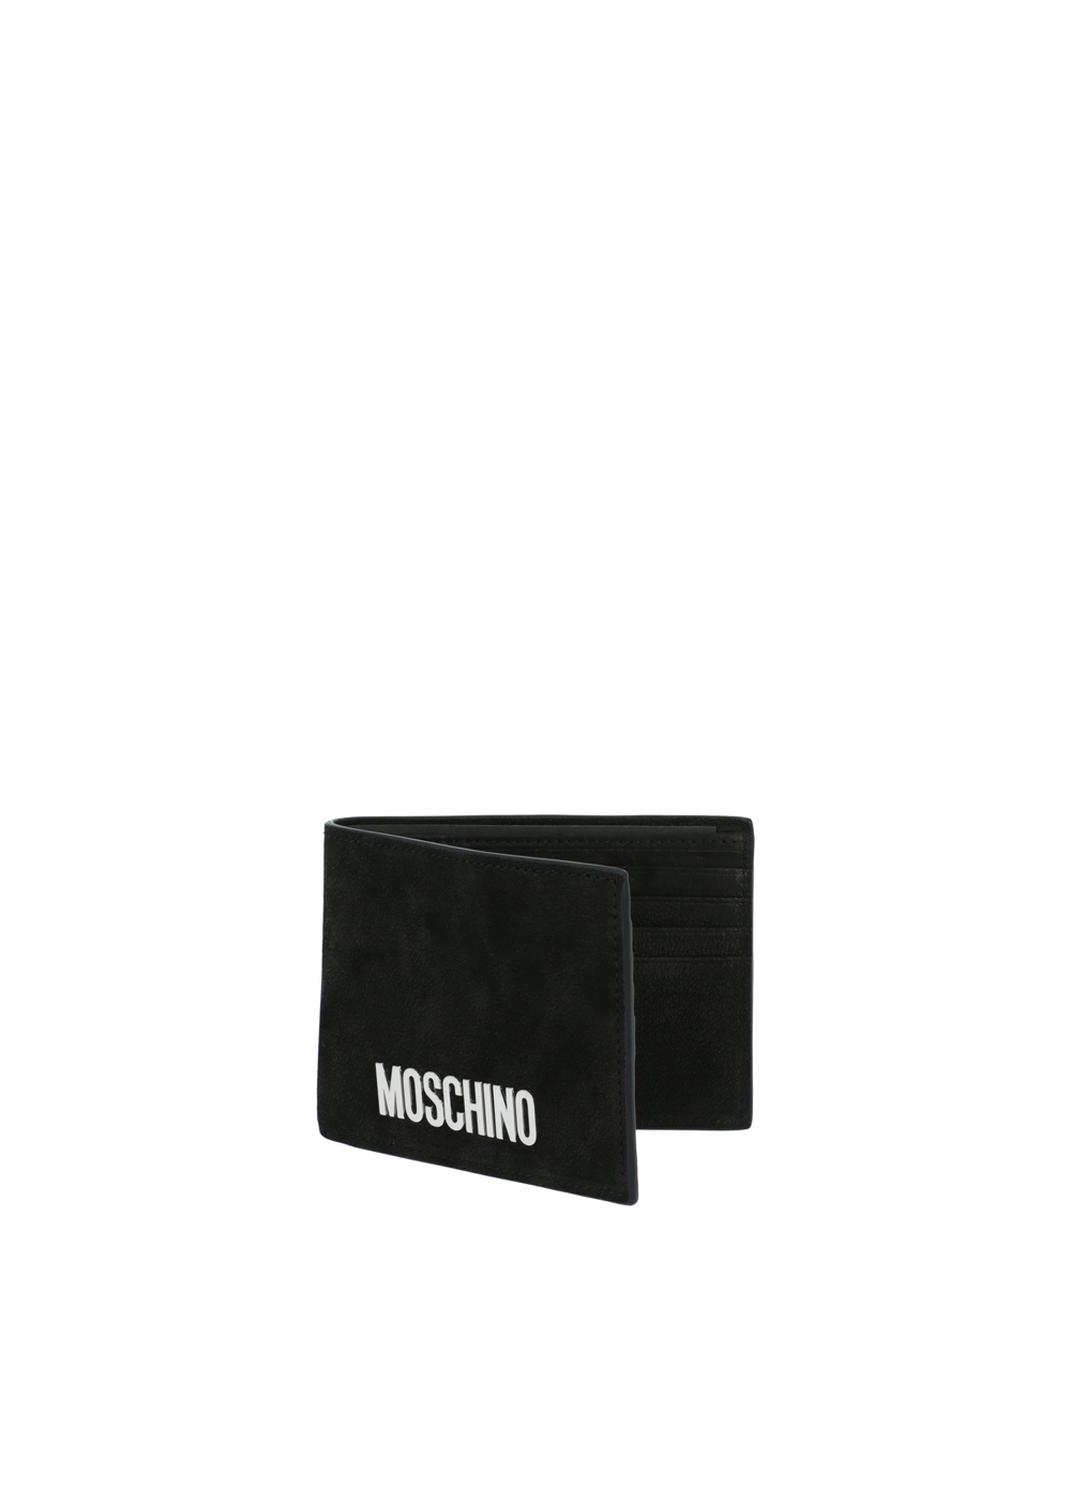 Moschino cartera con logo MSC-A8124